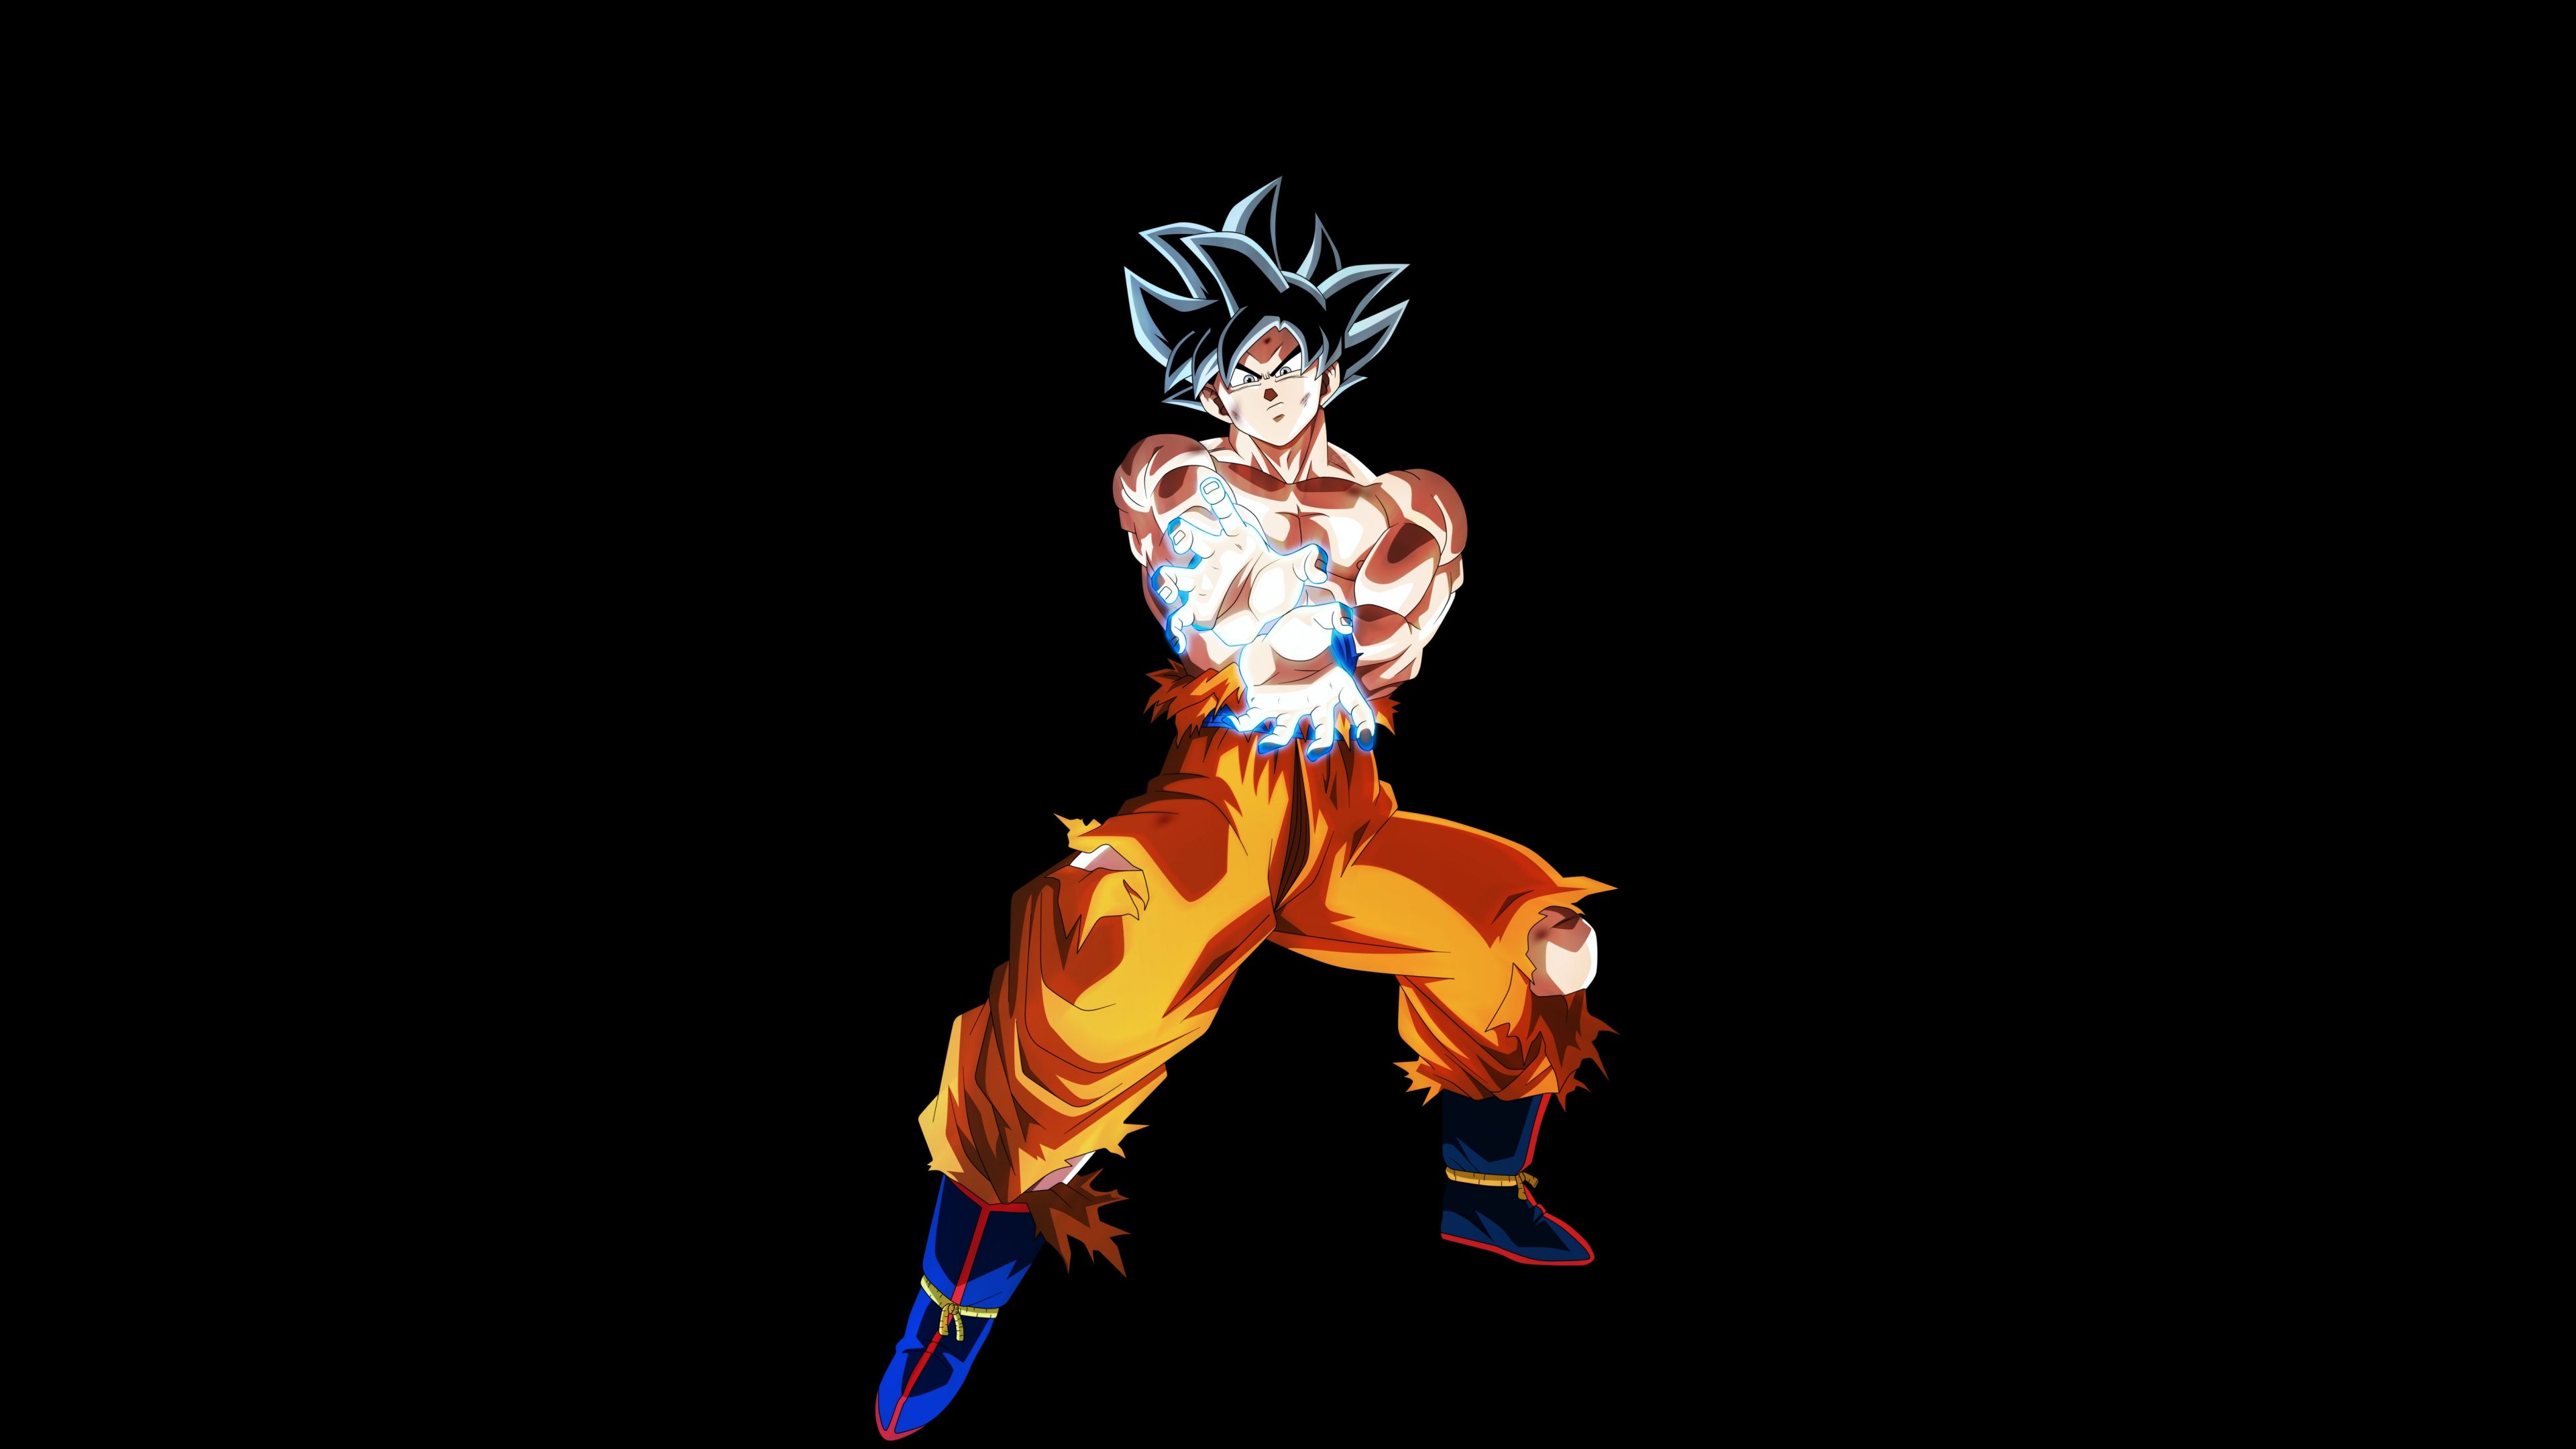 Download Goku, Utra instinct, Dragon Ball Super wallpaper, 3840x2160, 4K UHD 16:9, Widescreen